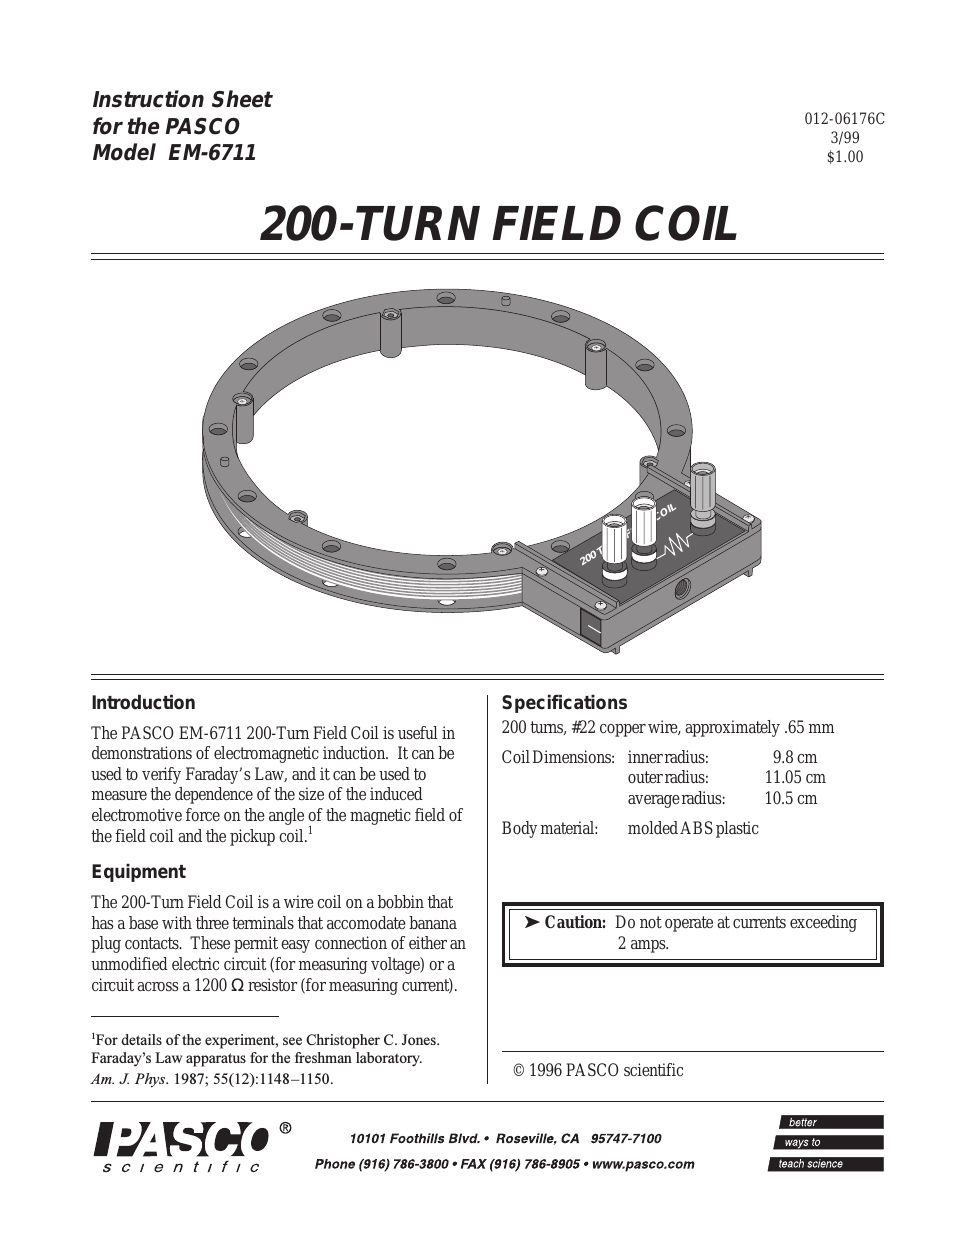 EM-6711 200-TURN FIELD COIL